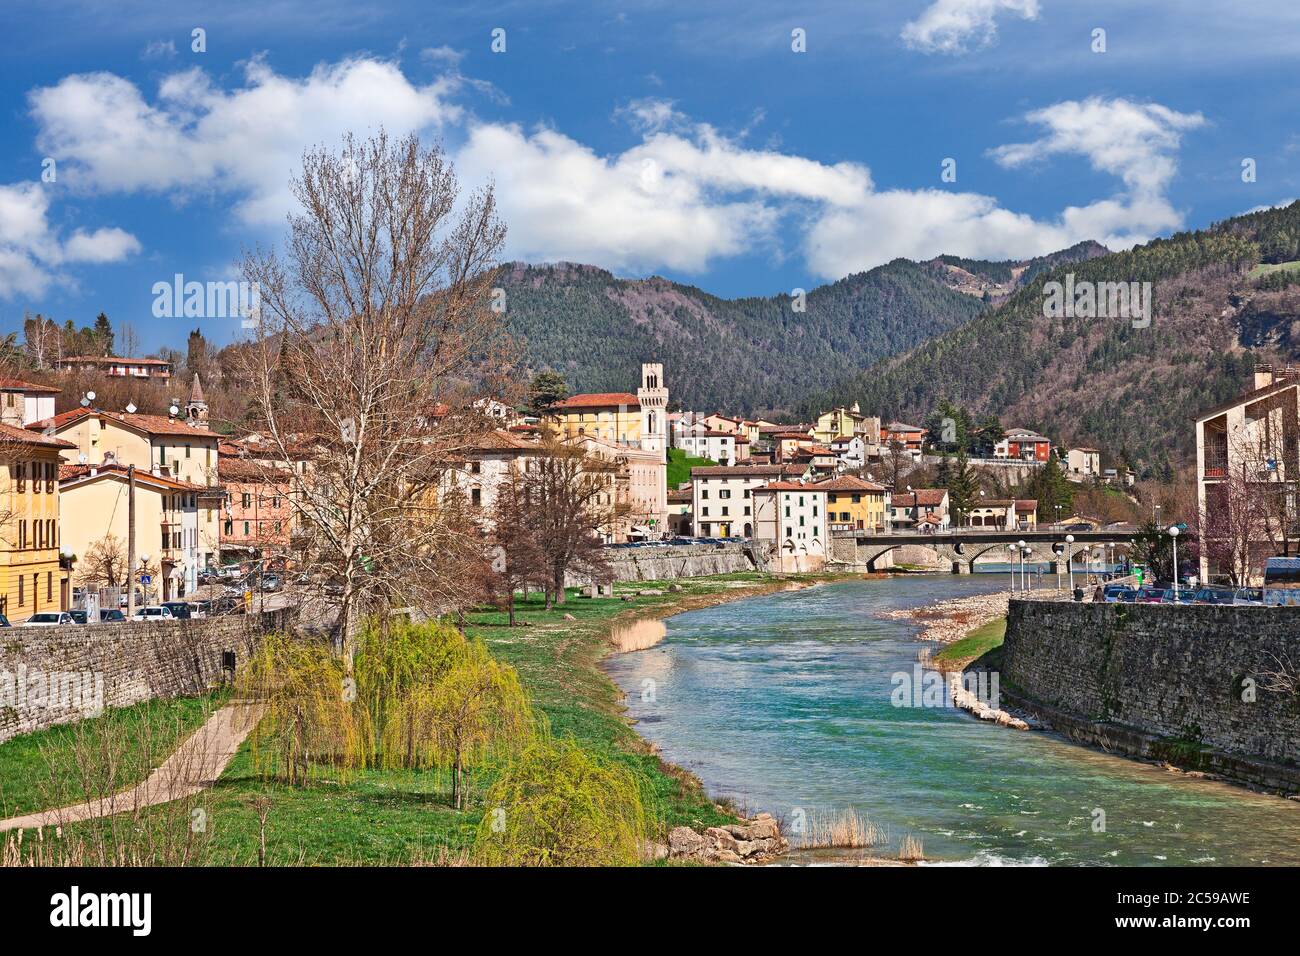 Santa Sofía, Forli Cesena, Emilia Romagna, Italia: Paisaje de la antigua ciudad con el pintoresco río y las montañas Apeninos en el fondo Foto de stock